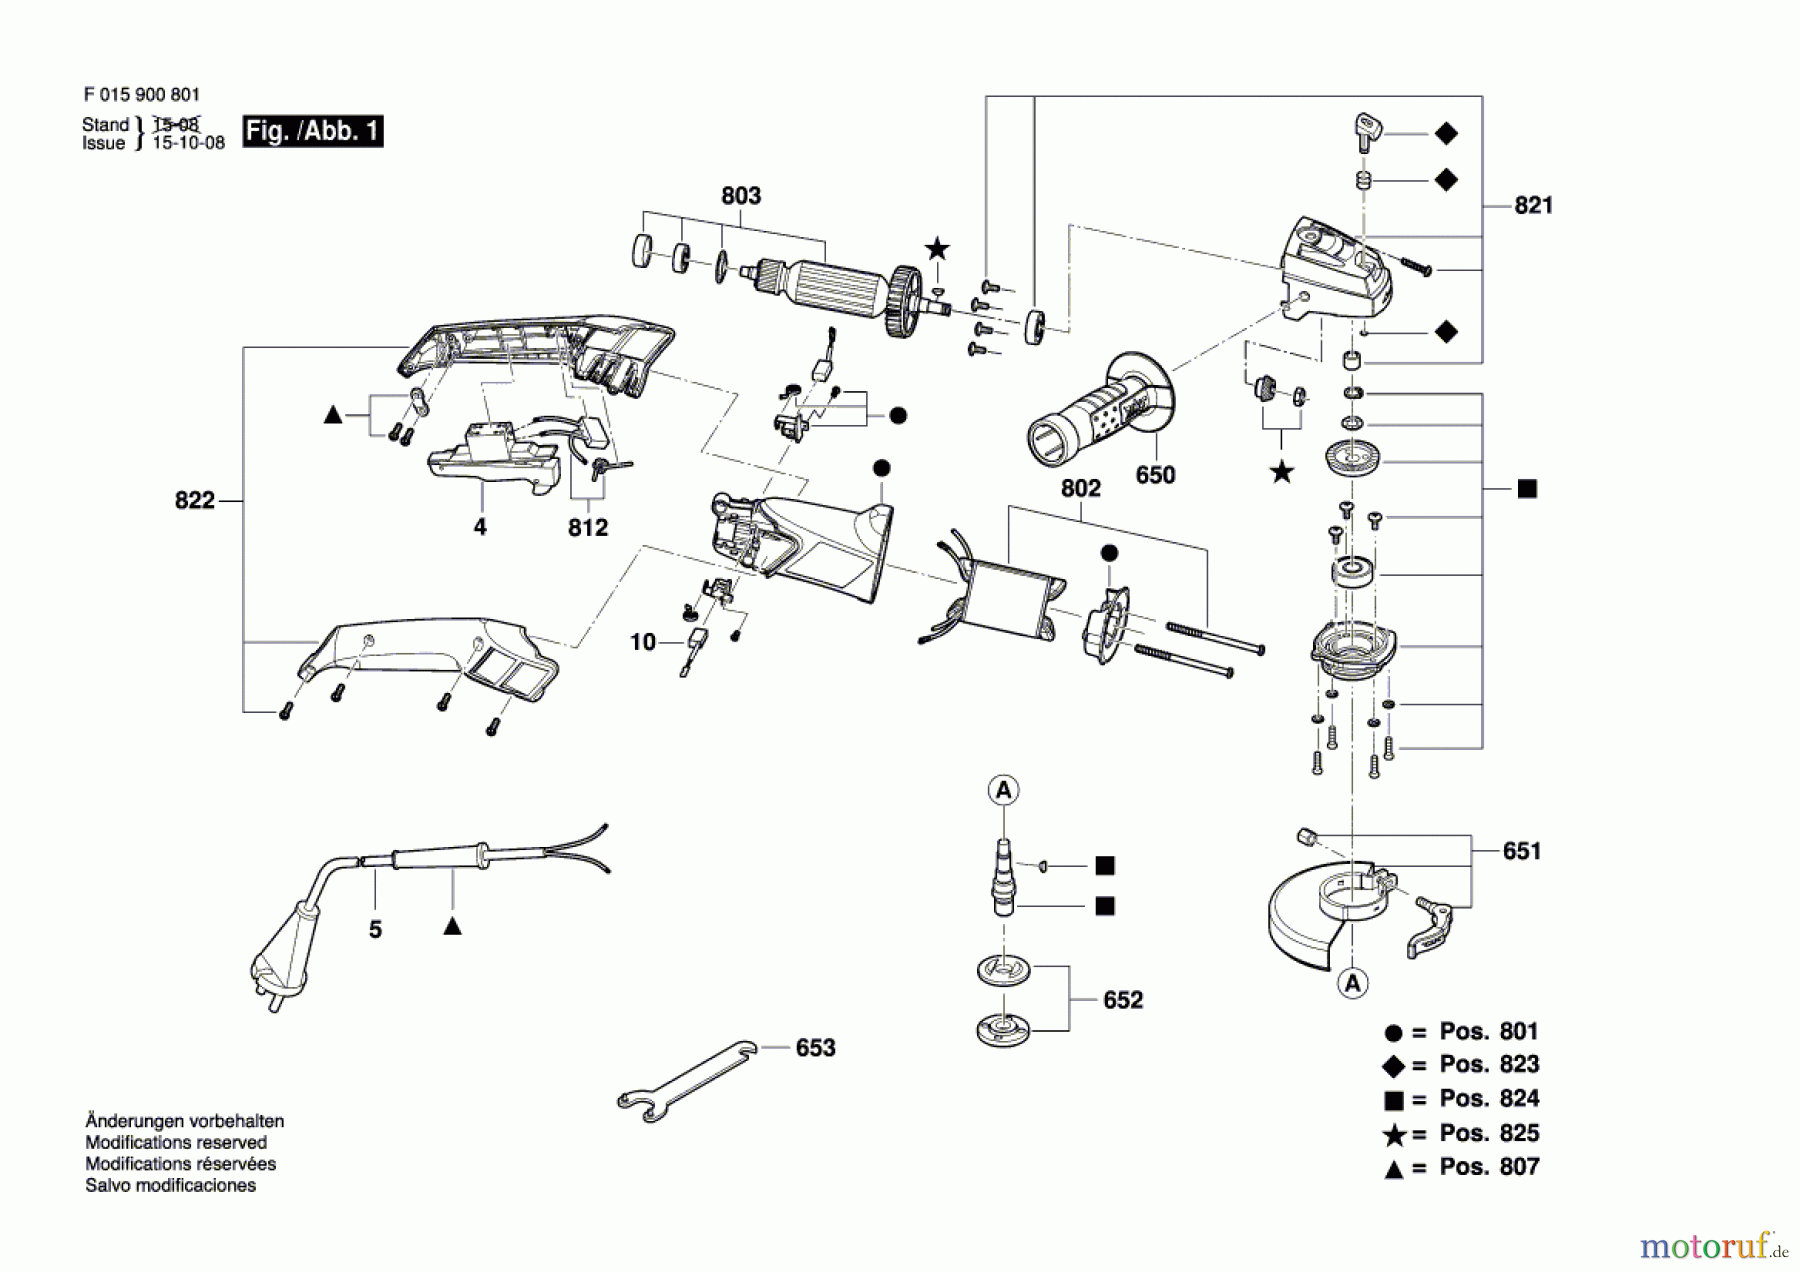  Bosch Werkzeug Pw-Winkelschleifer 9007 Seite 1